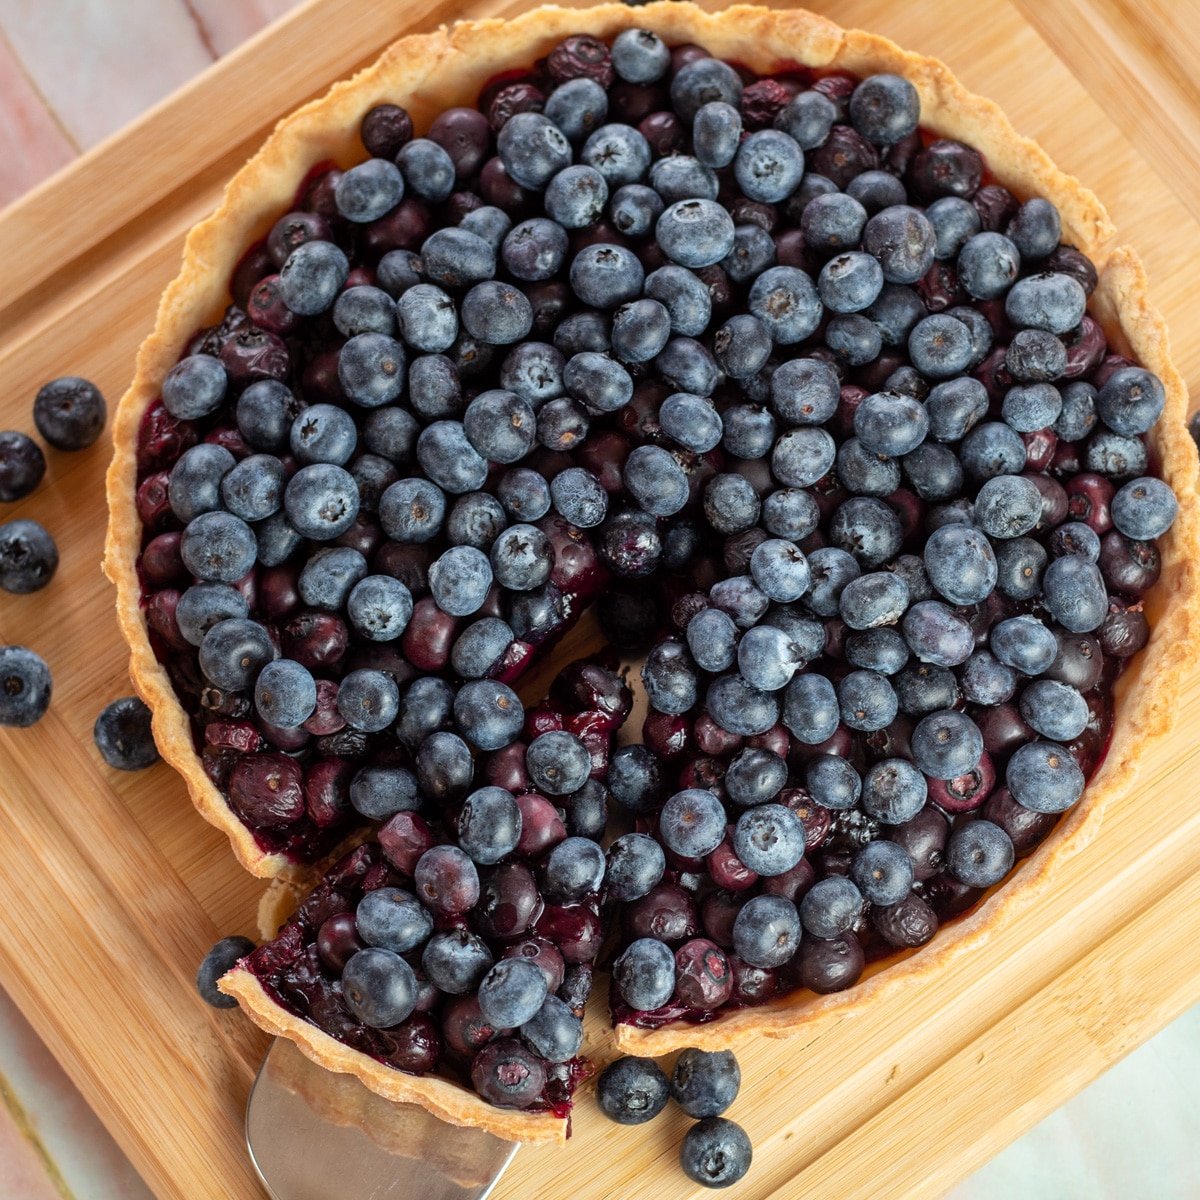 Gambar persegi kue tar blueberry di atas talenan dengan potongan yang dibuang.